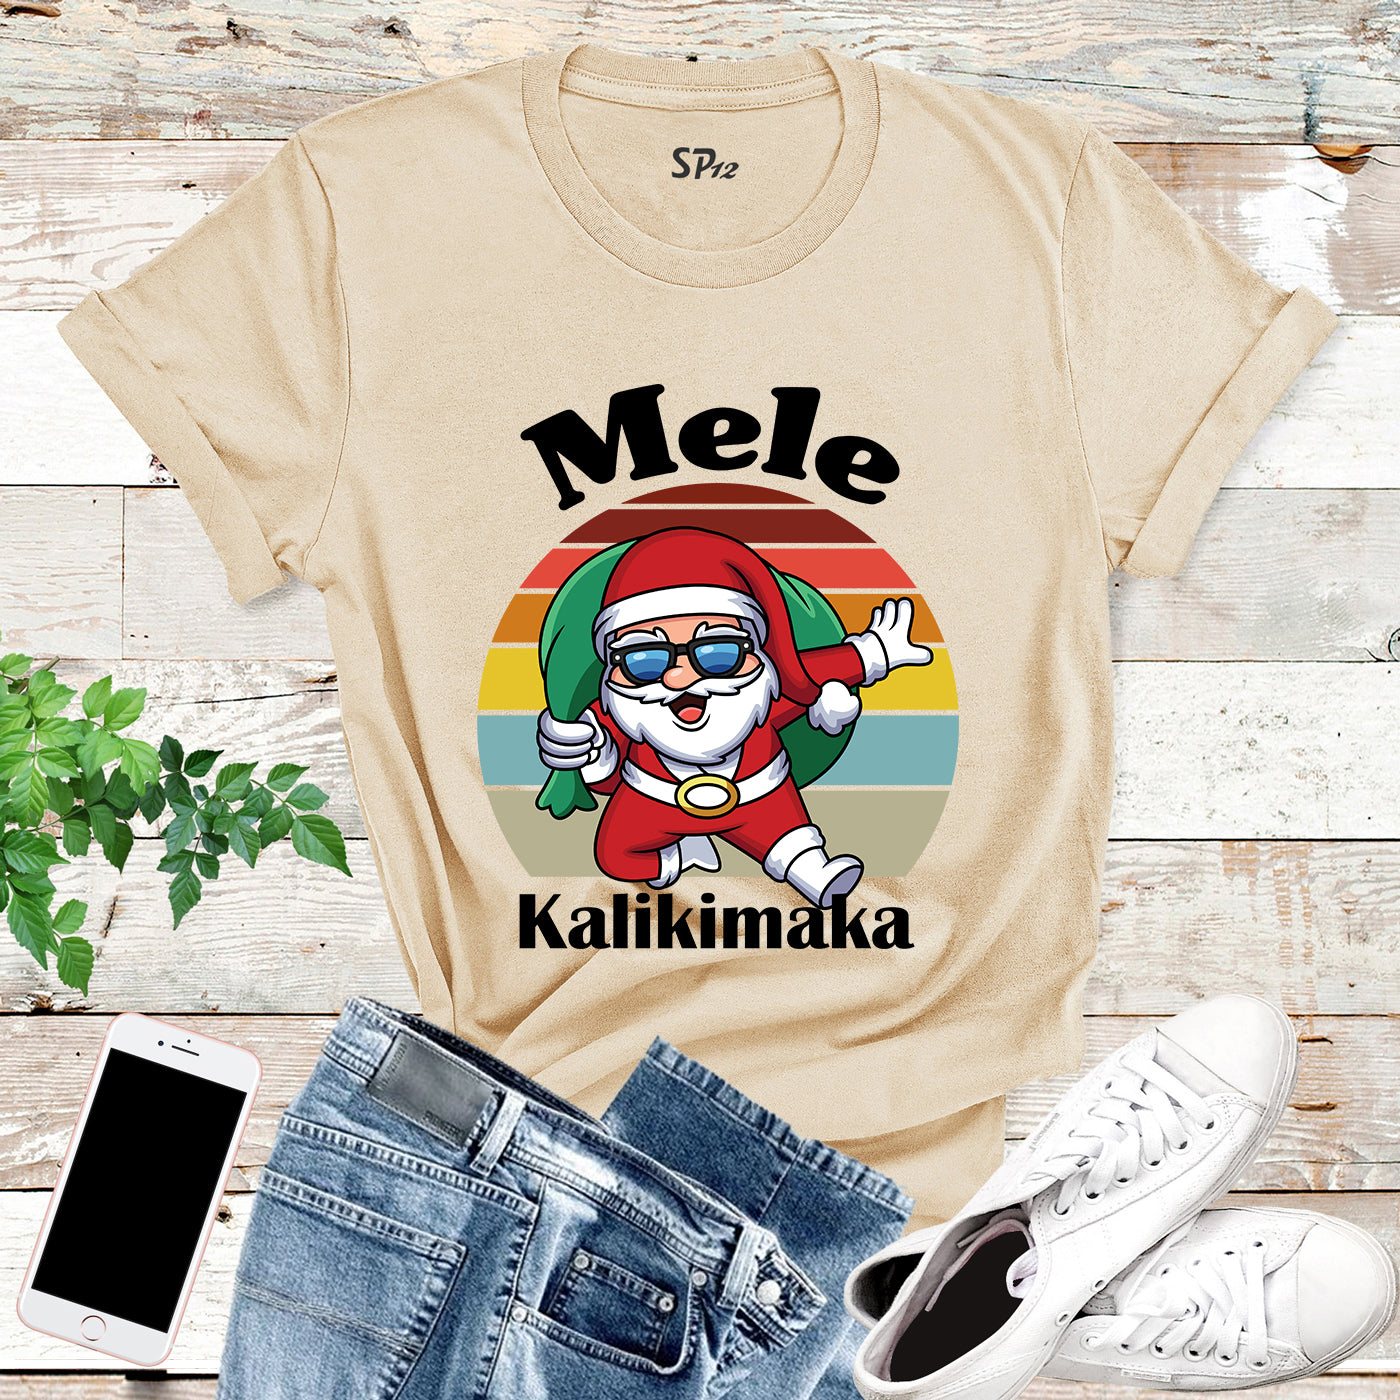 Mele Kalikimaka Hawaii Christmas T Shirt